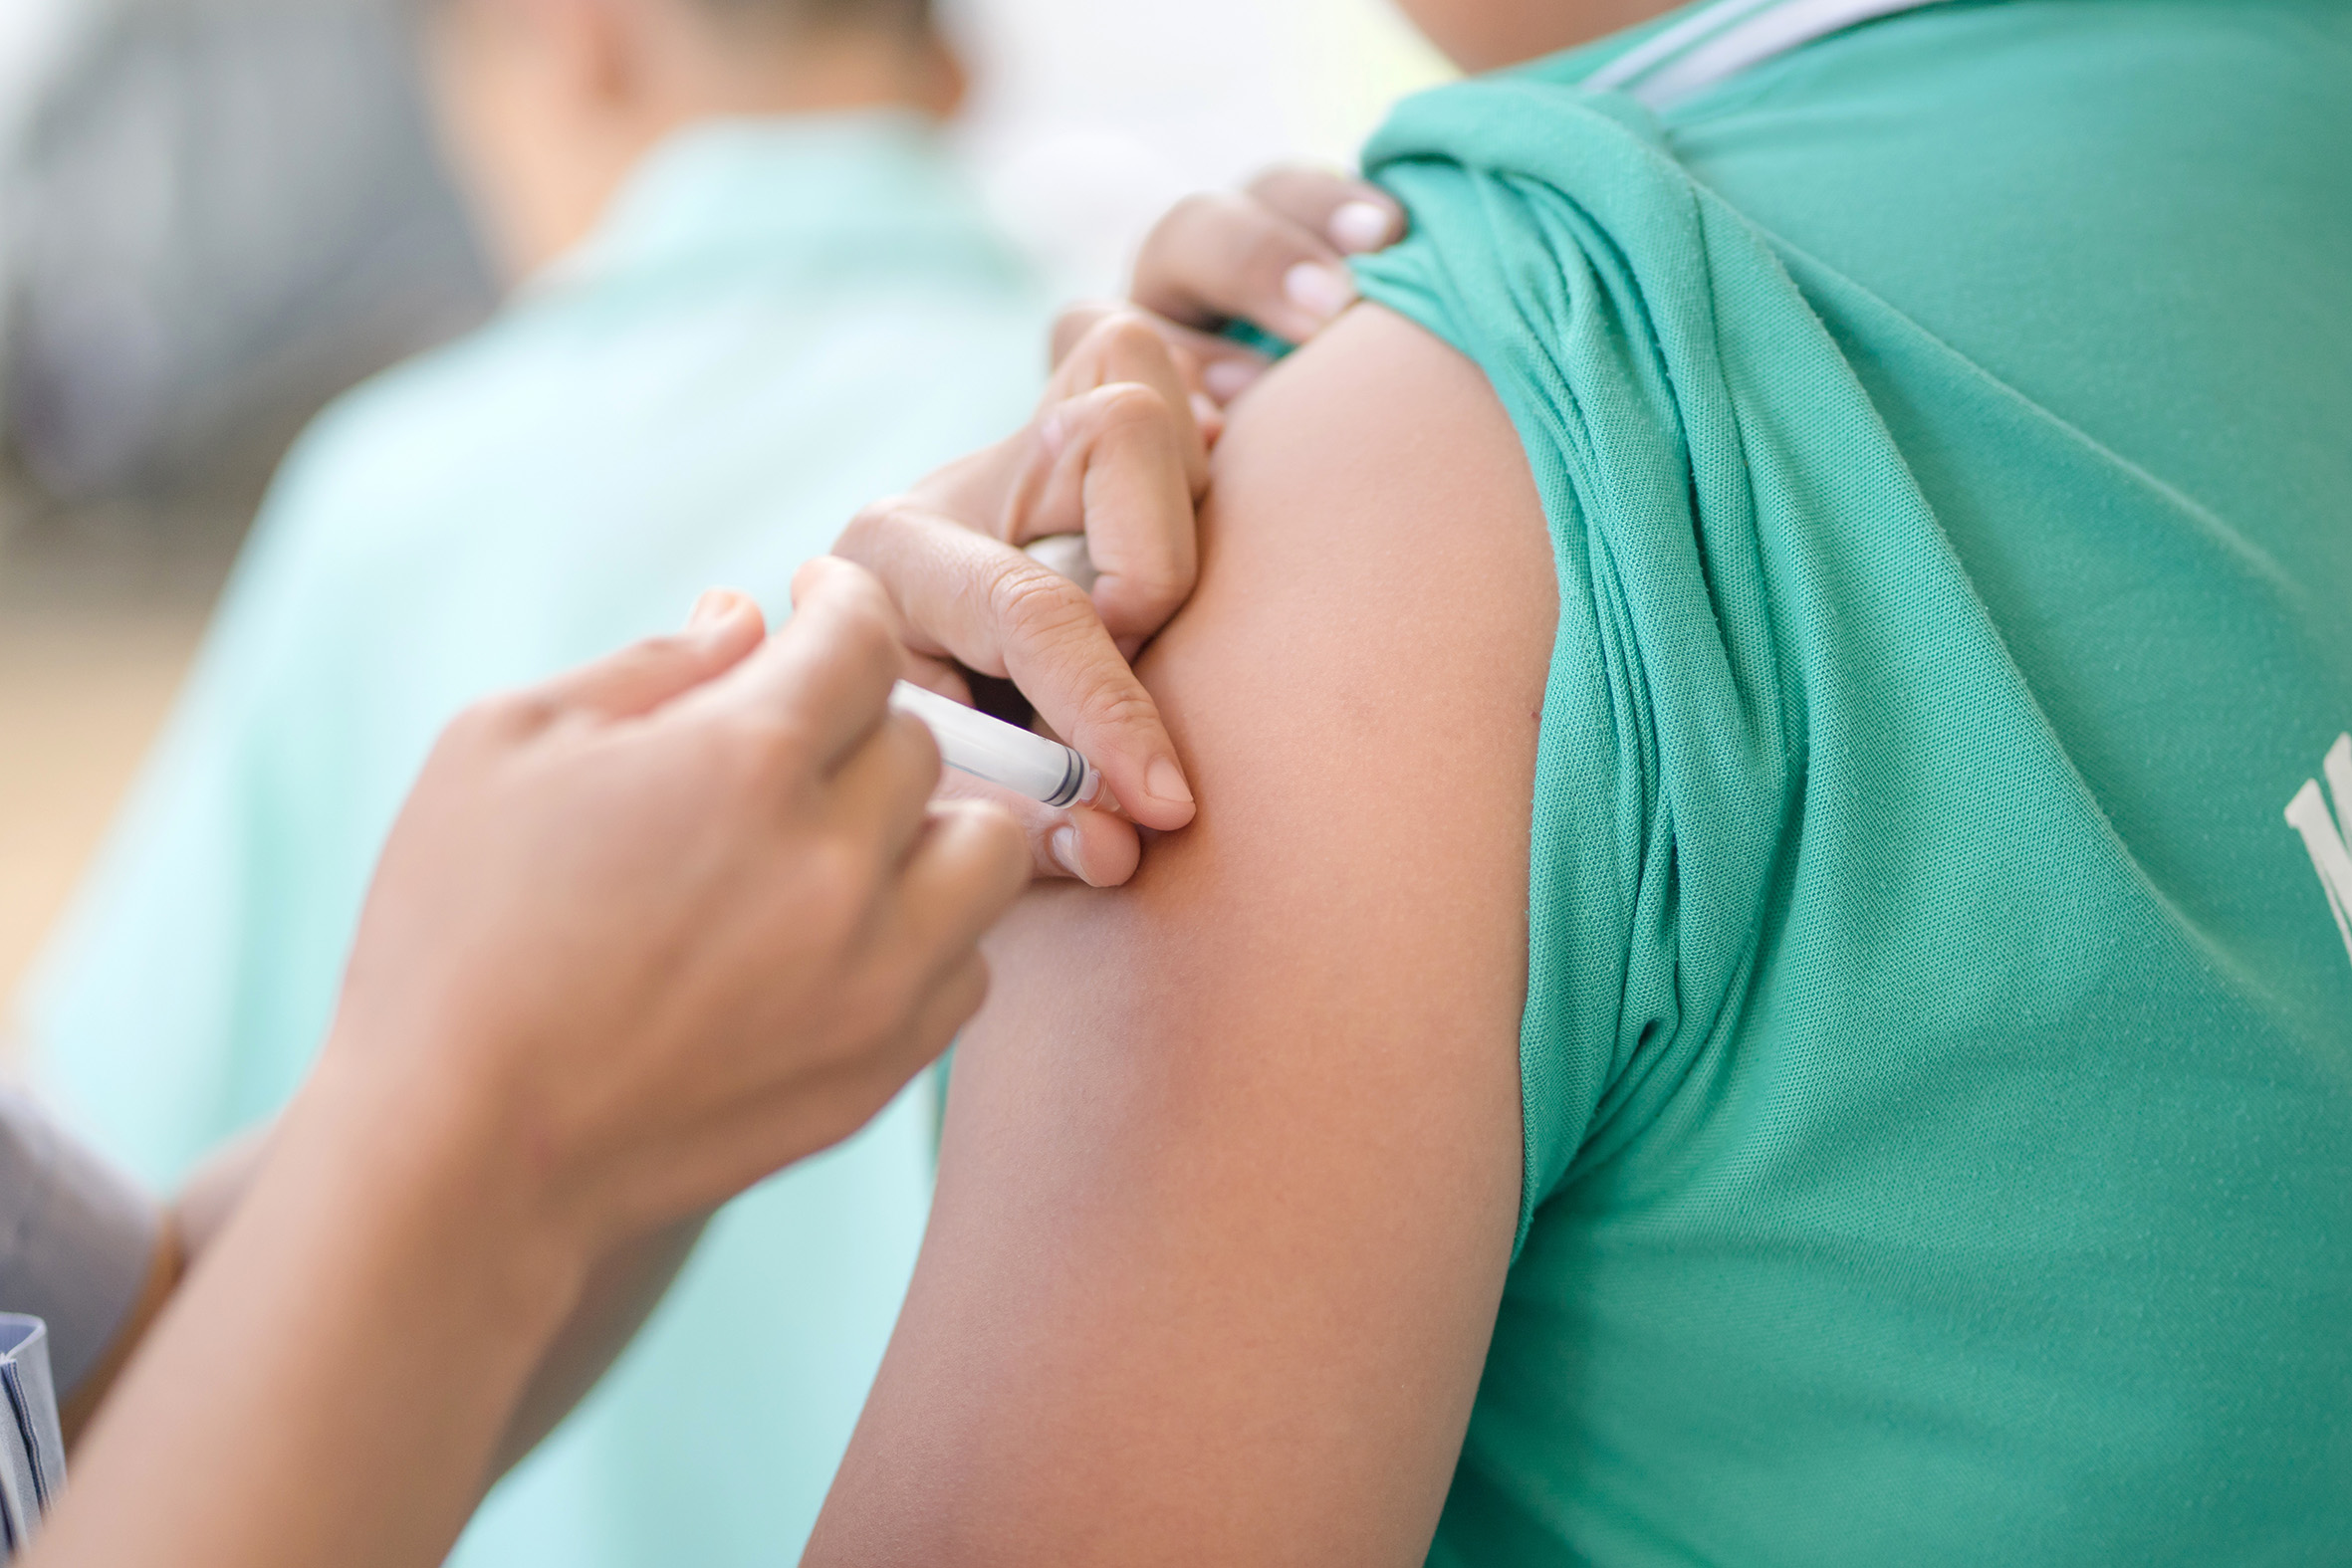 L’Agence des droits fondamentaux de l’UE critique la distribution des vaccins contre le Covid-19